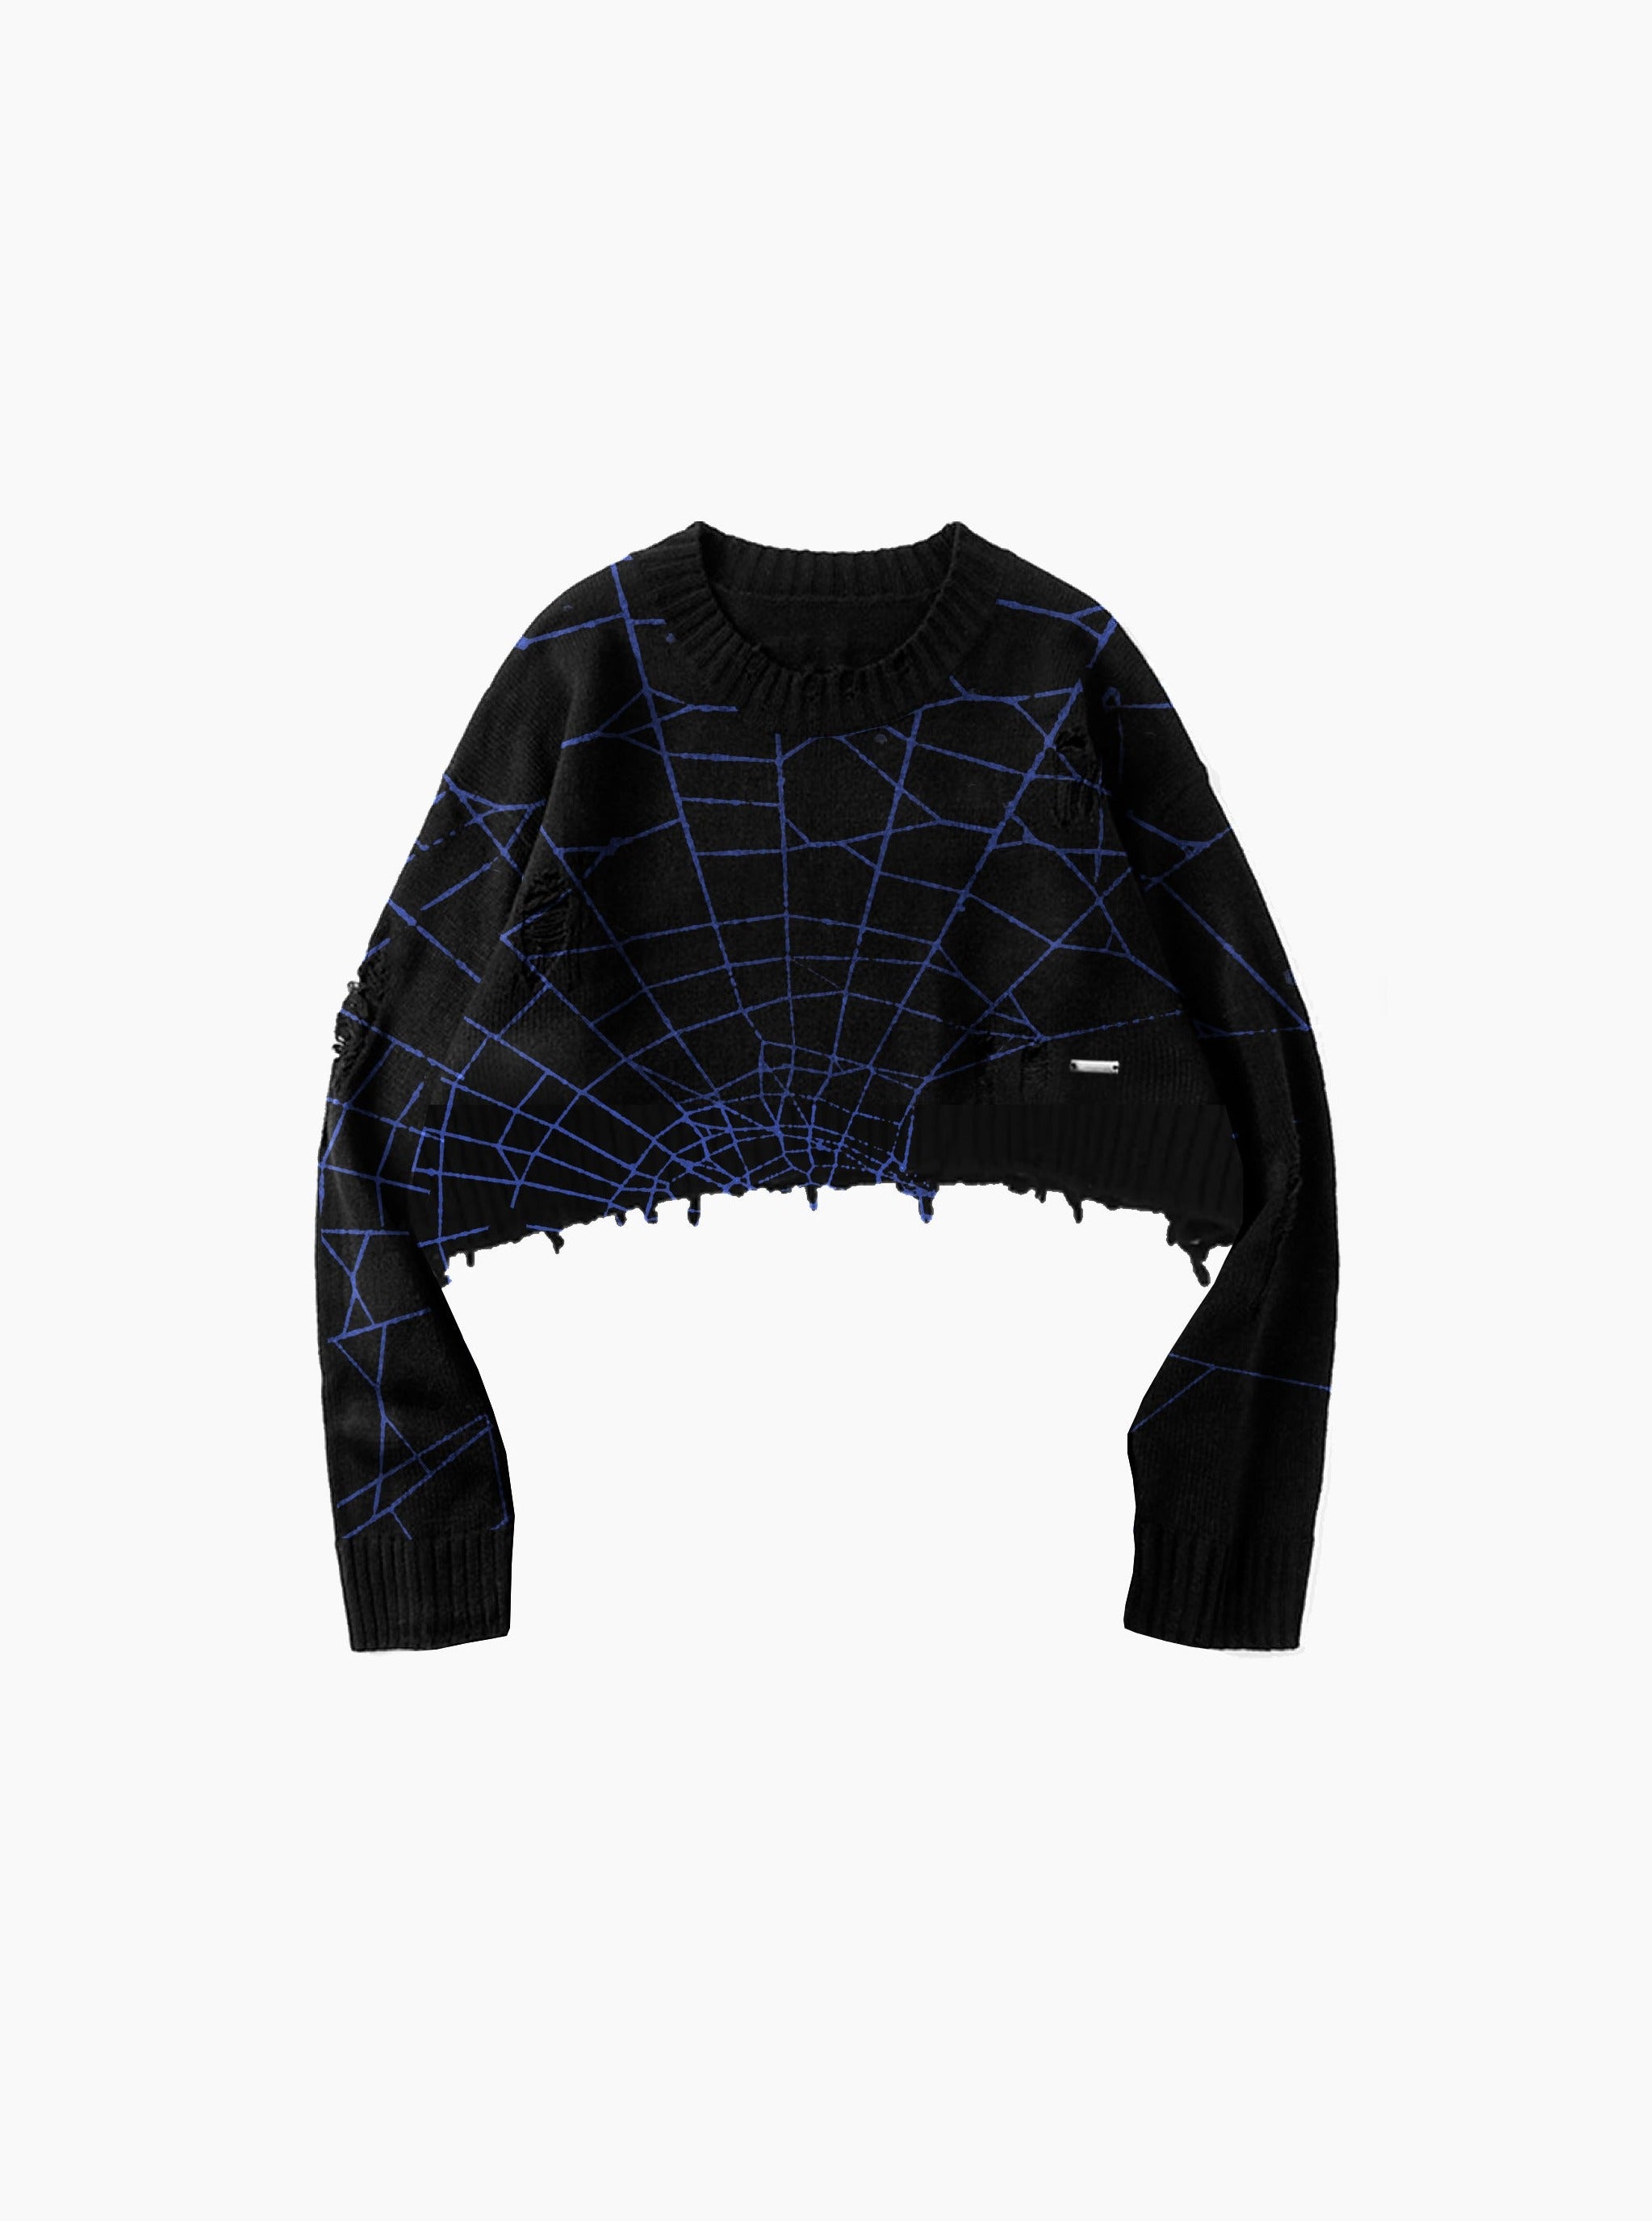 Sole et. Damski sweter z dzianiny Al Dark Web Distressed Knit Sweater